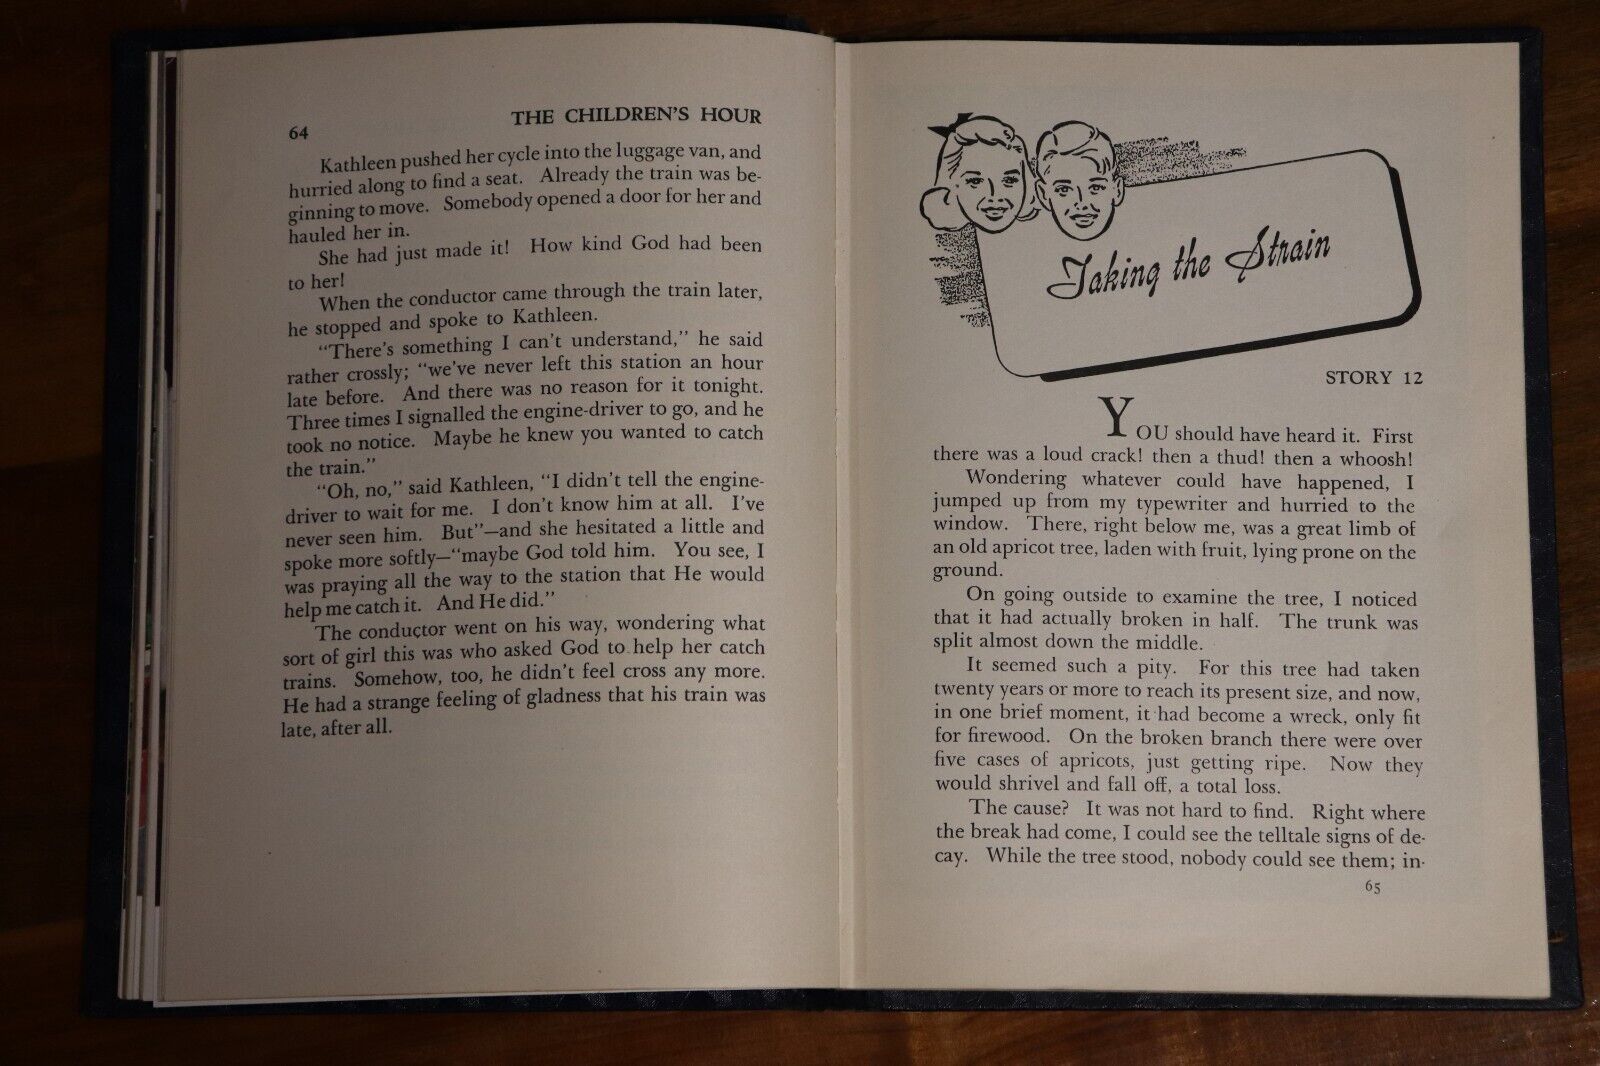 The Children's Hour: Uncle Arthur - 1947 - Antique Childrens Book